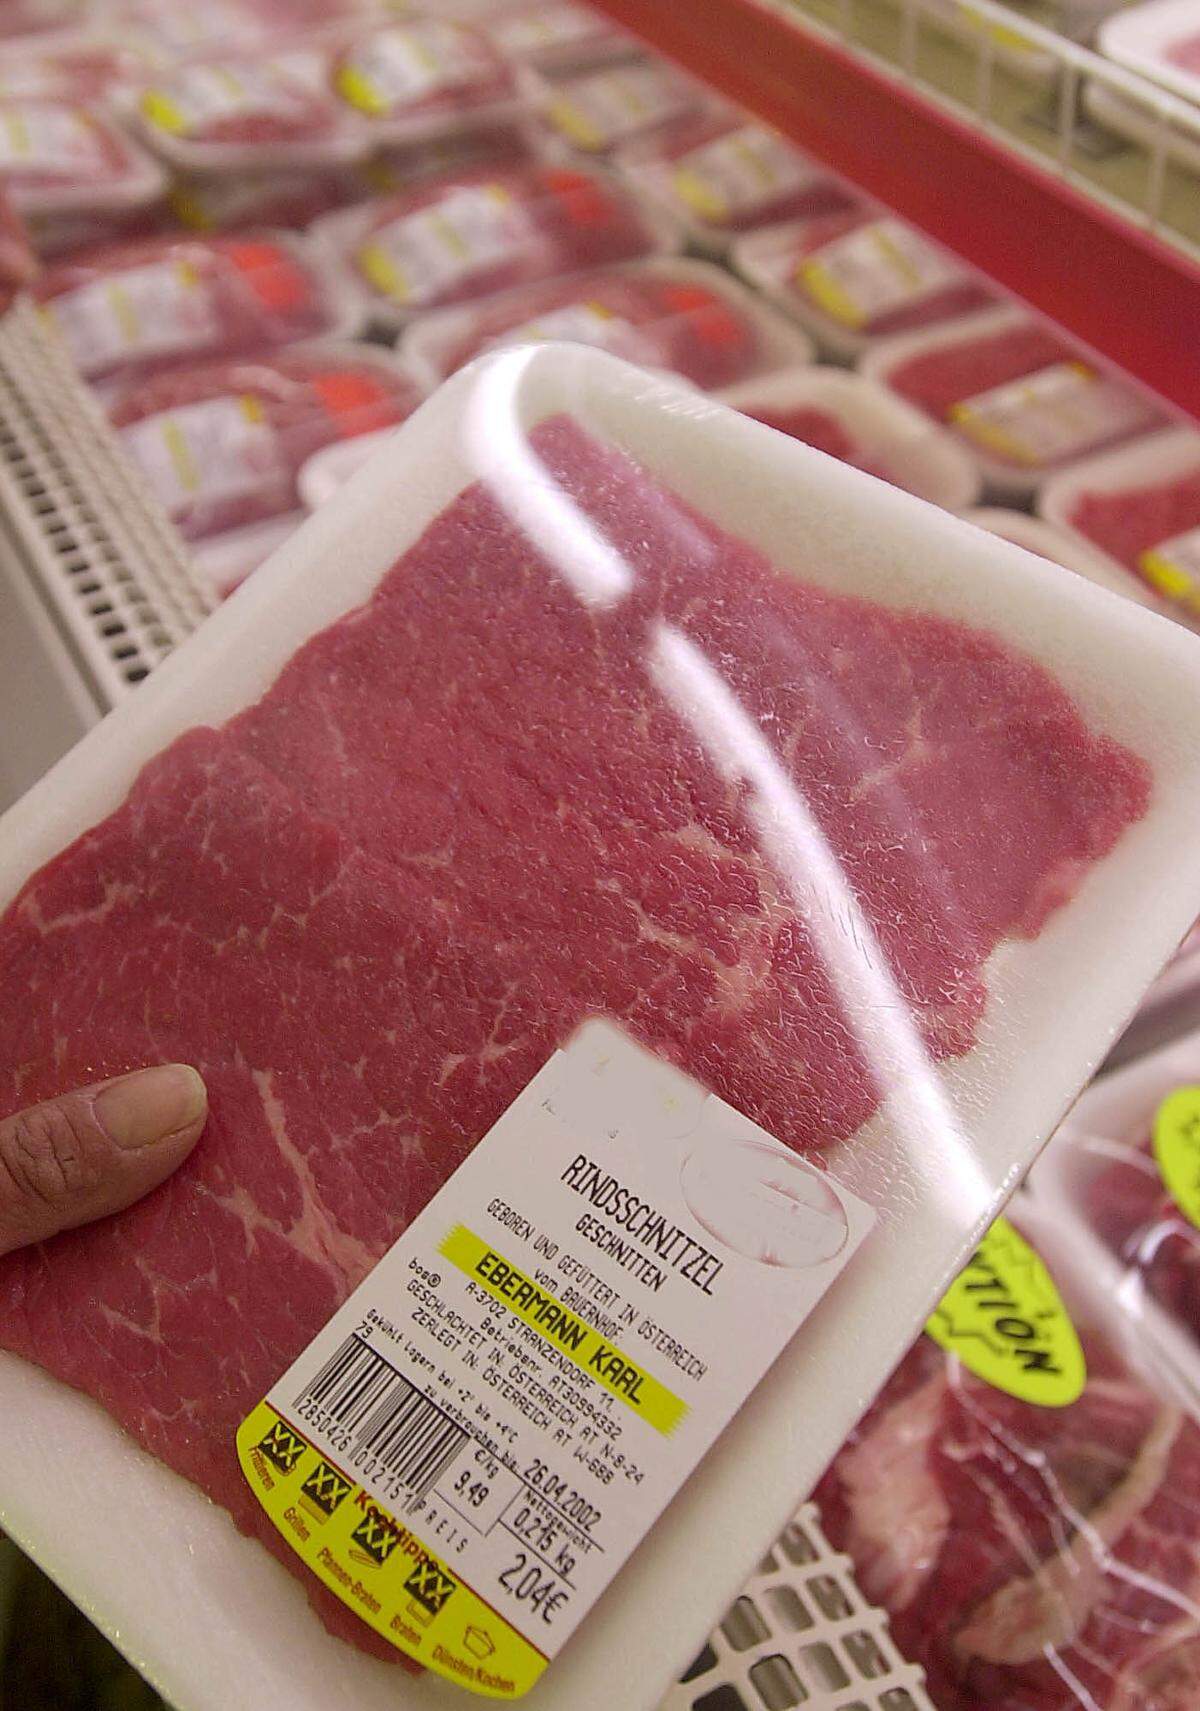 Der Pro-Kopf-Verbrauch an Fleisch beträgt in Österreich sage und schreibe 100,3 Kilo. Produziert wurden 898.000 Tonnen Fleisch.